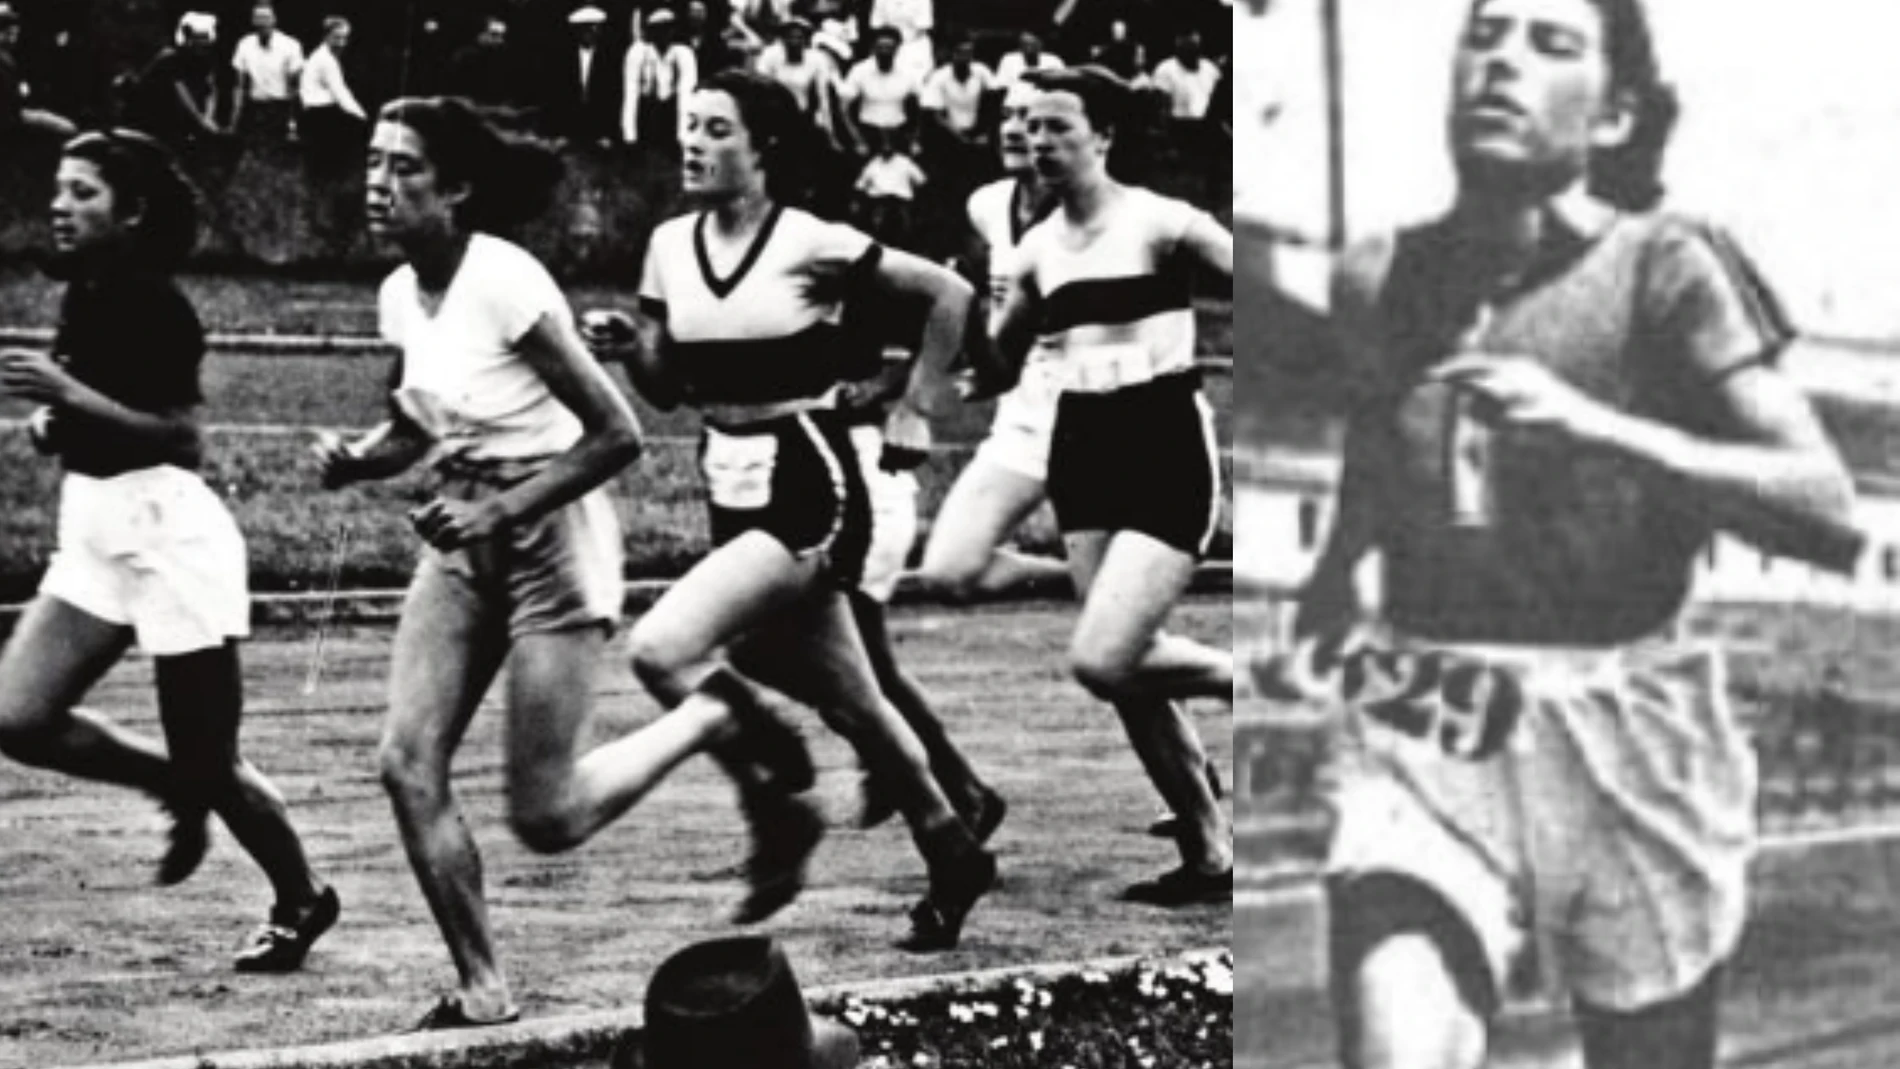 La relación histórica de la mujer con el deporte